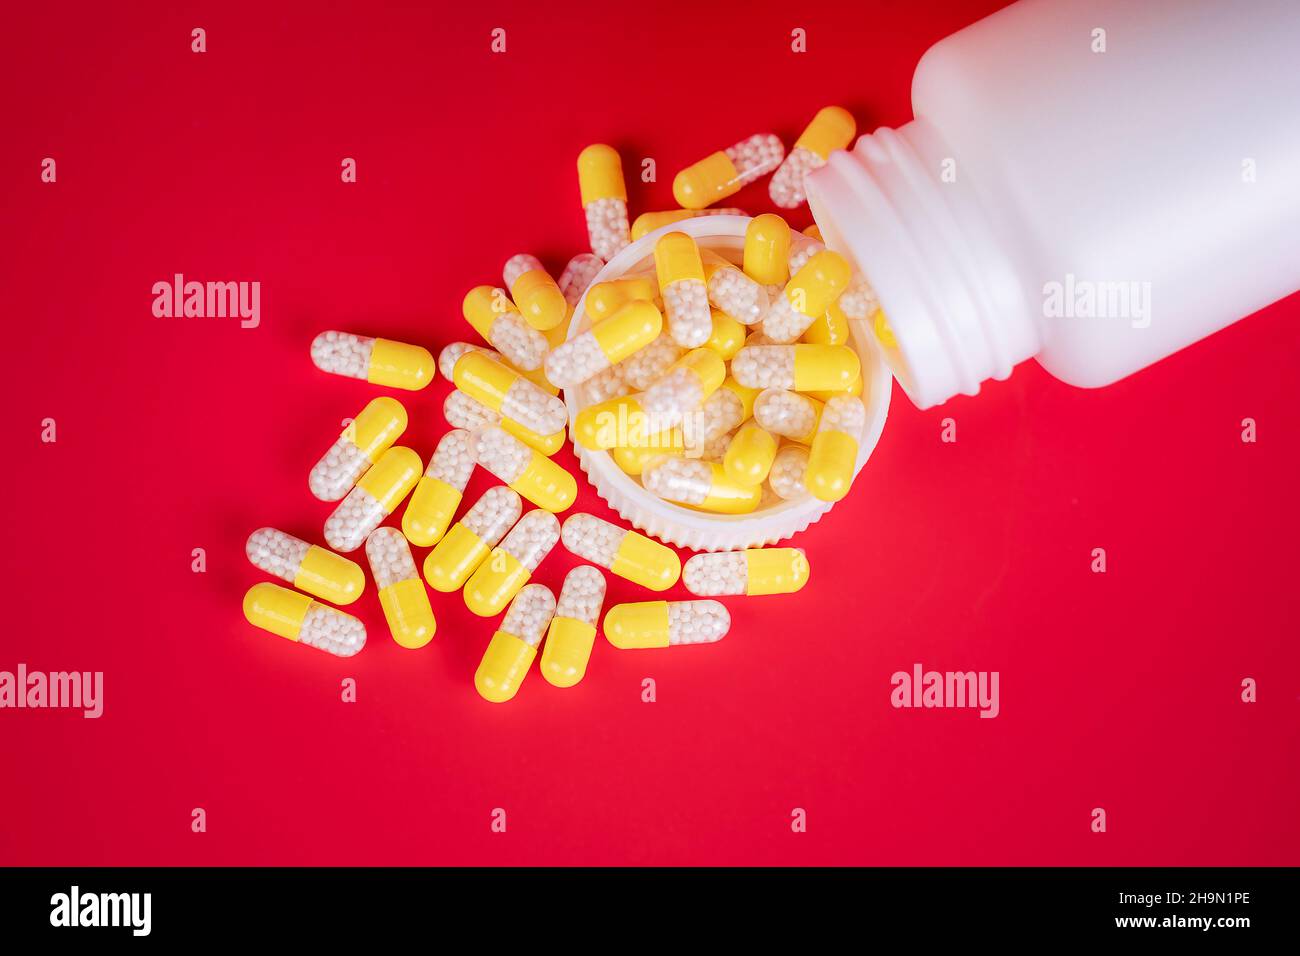 Concetto di medicina. Capsule gialle sparse dal flacone con prescrizione medica. Lo sfondo è di colore rosso, con spazio per la scrittura. Foto studio. Foto Stock